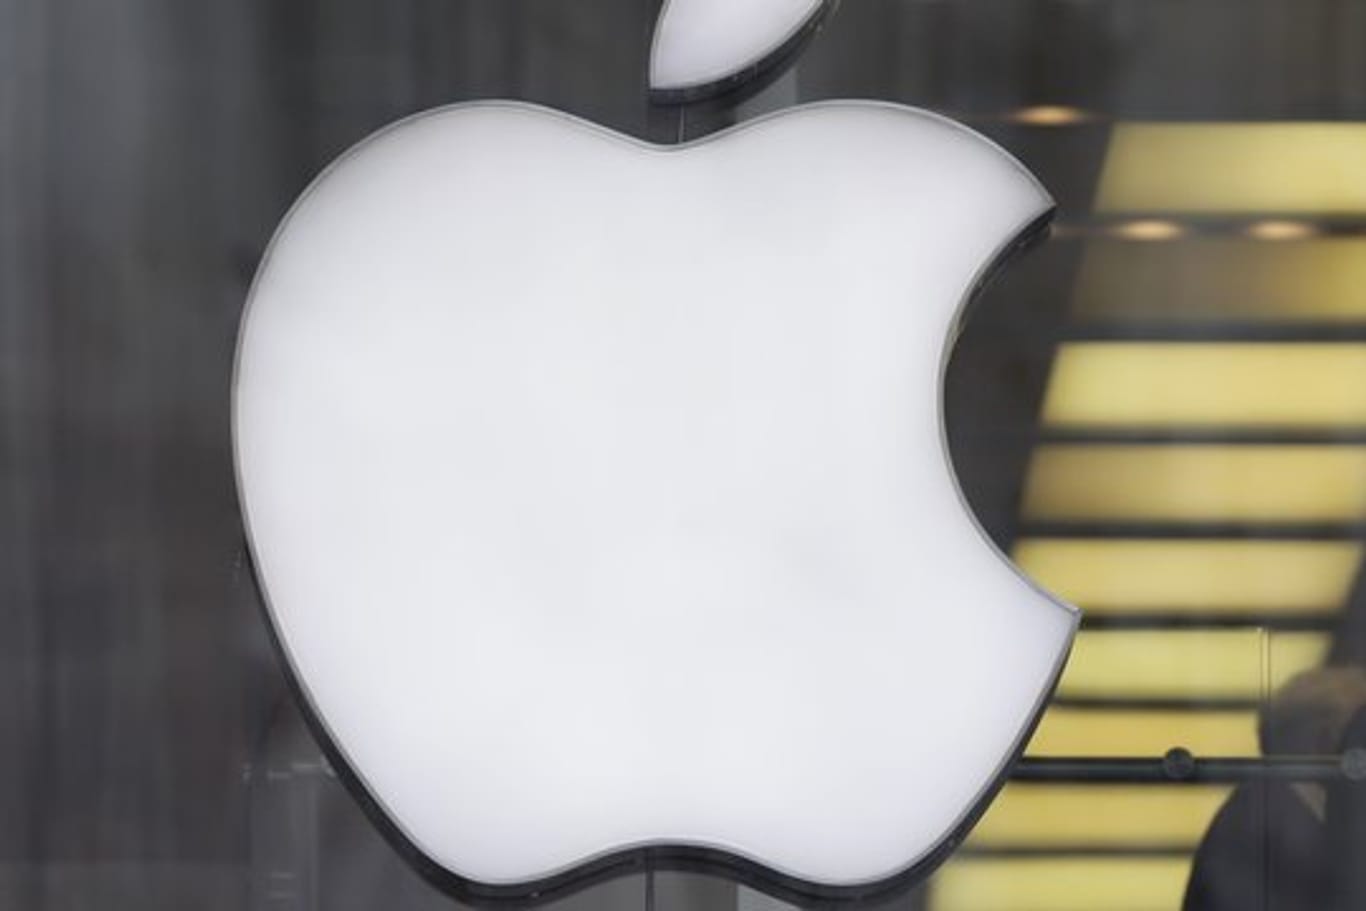 Das Hardware-Geschäft von Apple hatte zuletzt geschwächelt, vor allem weil der Absatz in China geradezu eingebrochen war.